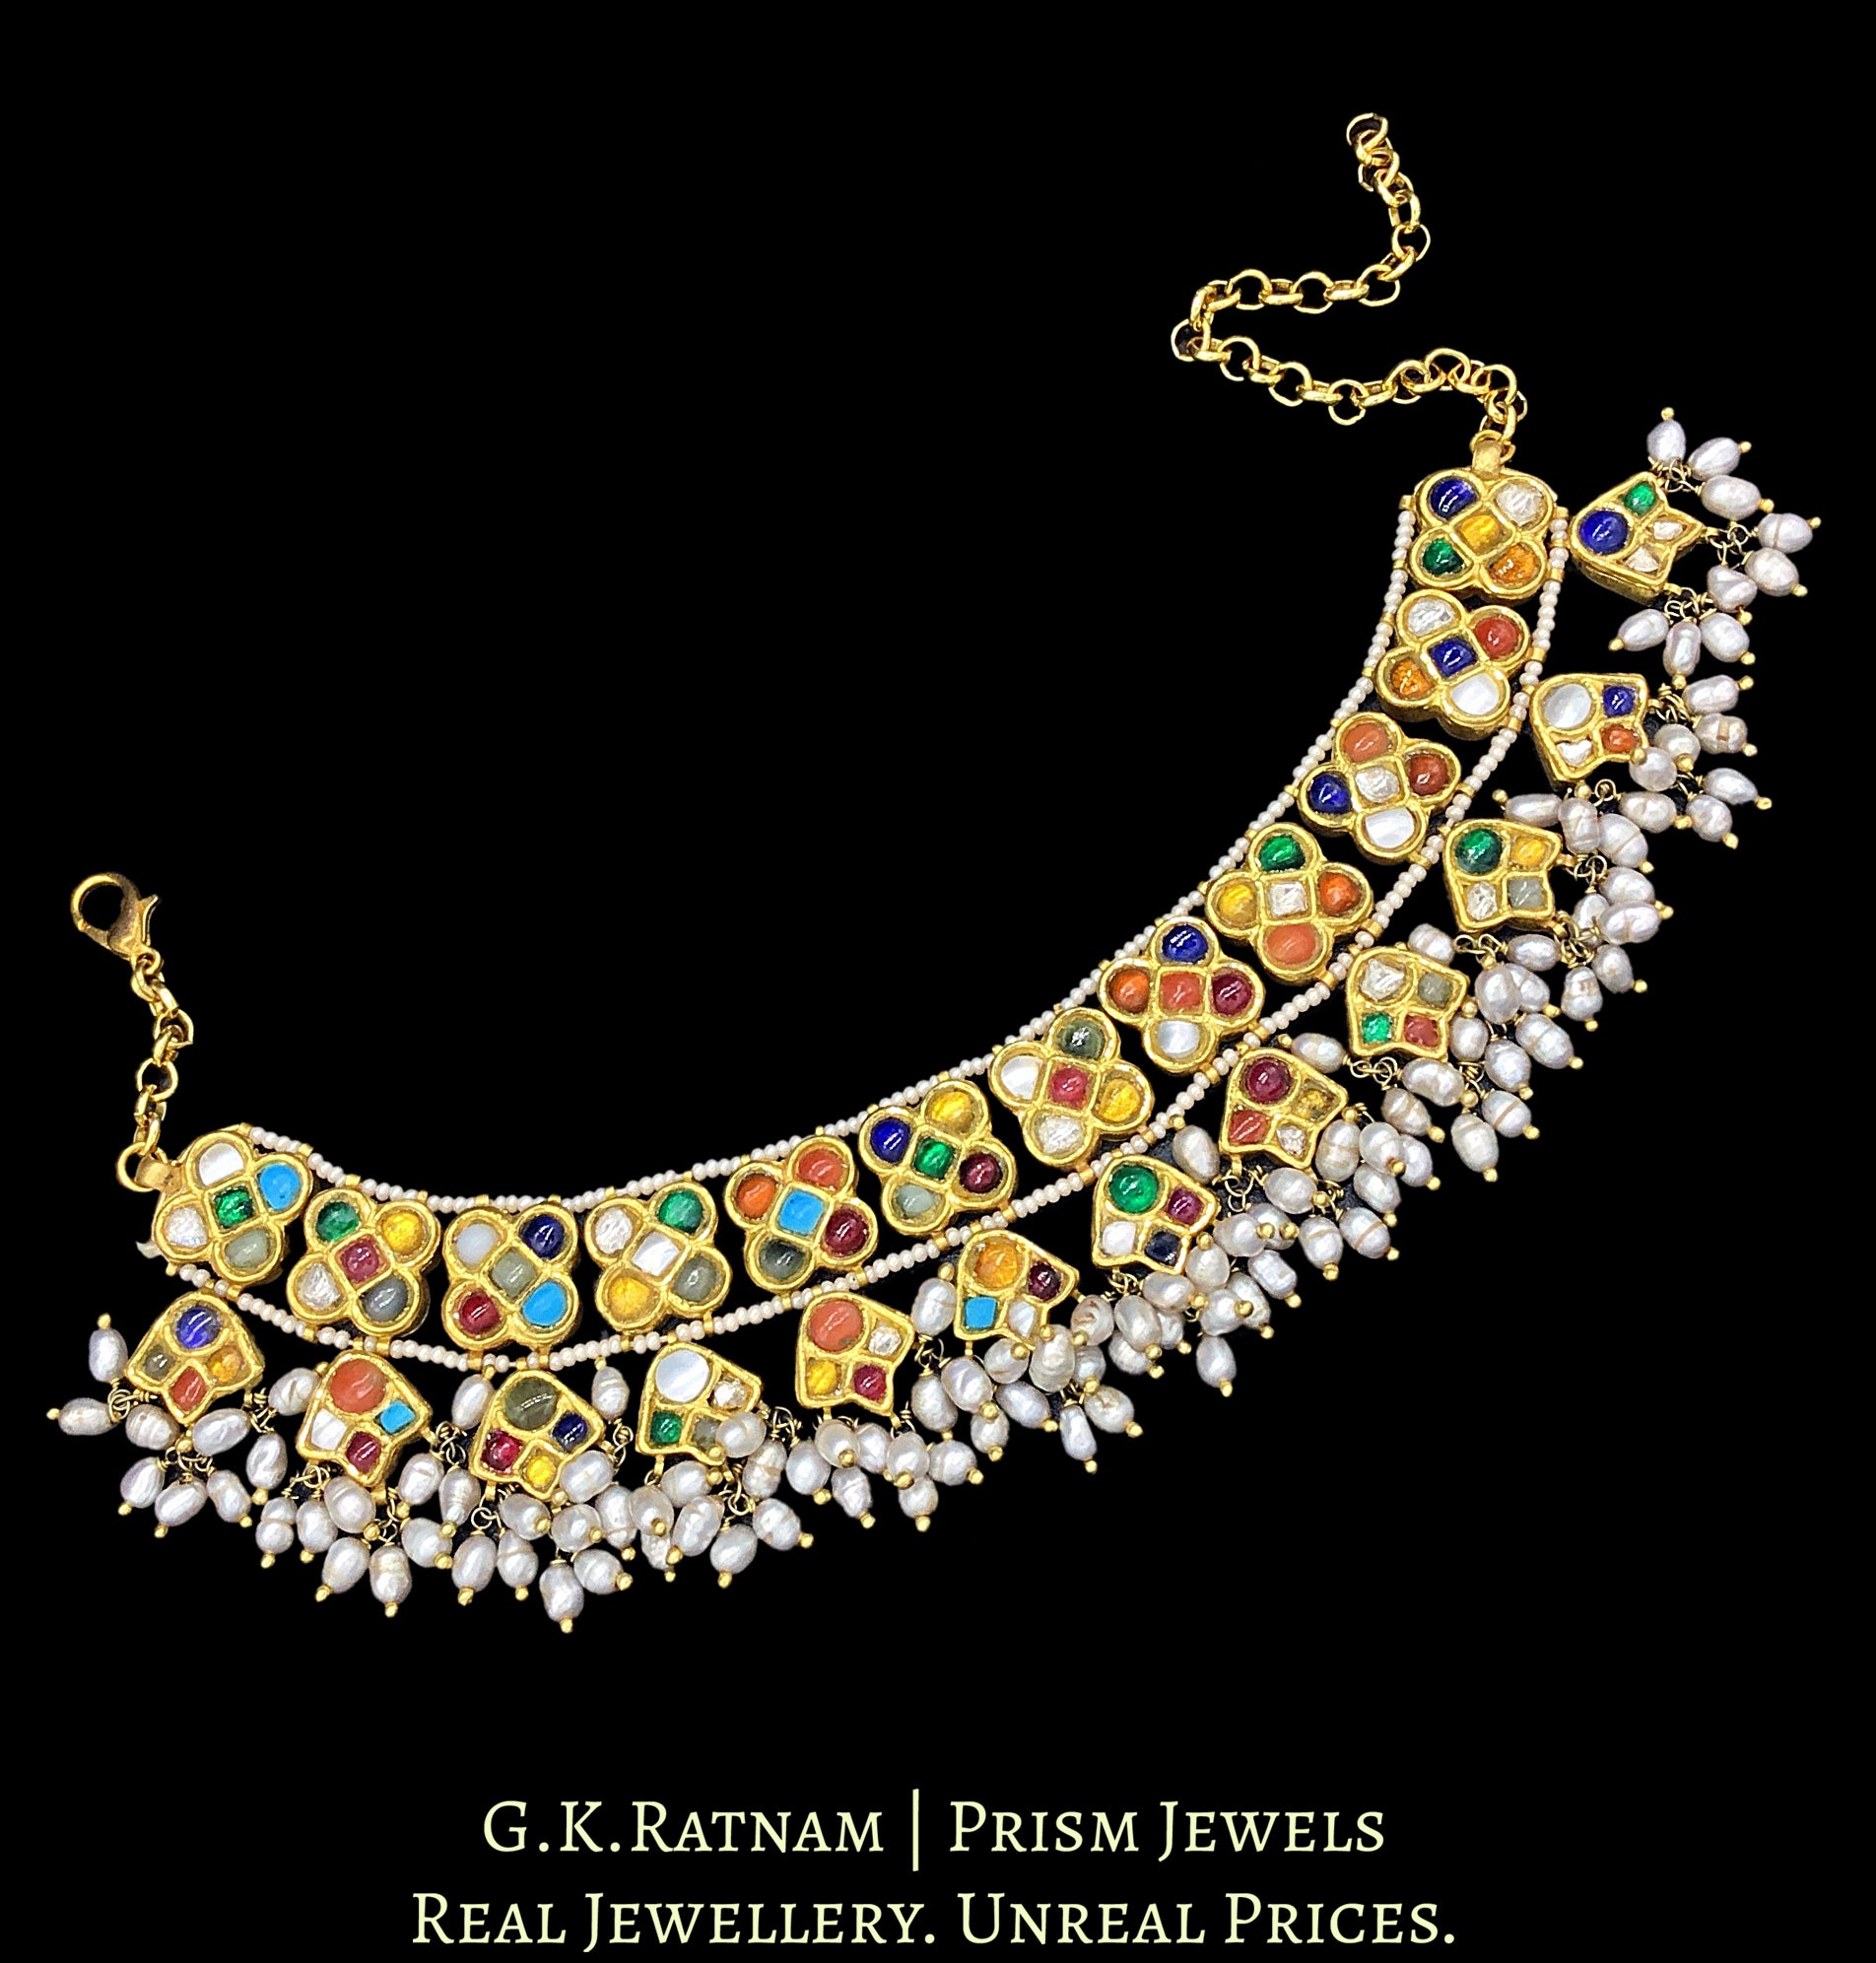 22k Gold and Diamond Polki Navratna Bracelet with Natural Freshwater Pearls - G. K. Ratnam